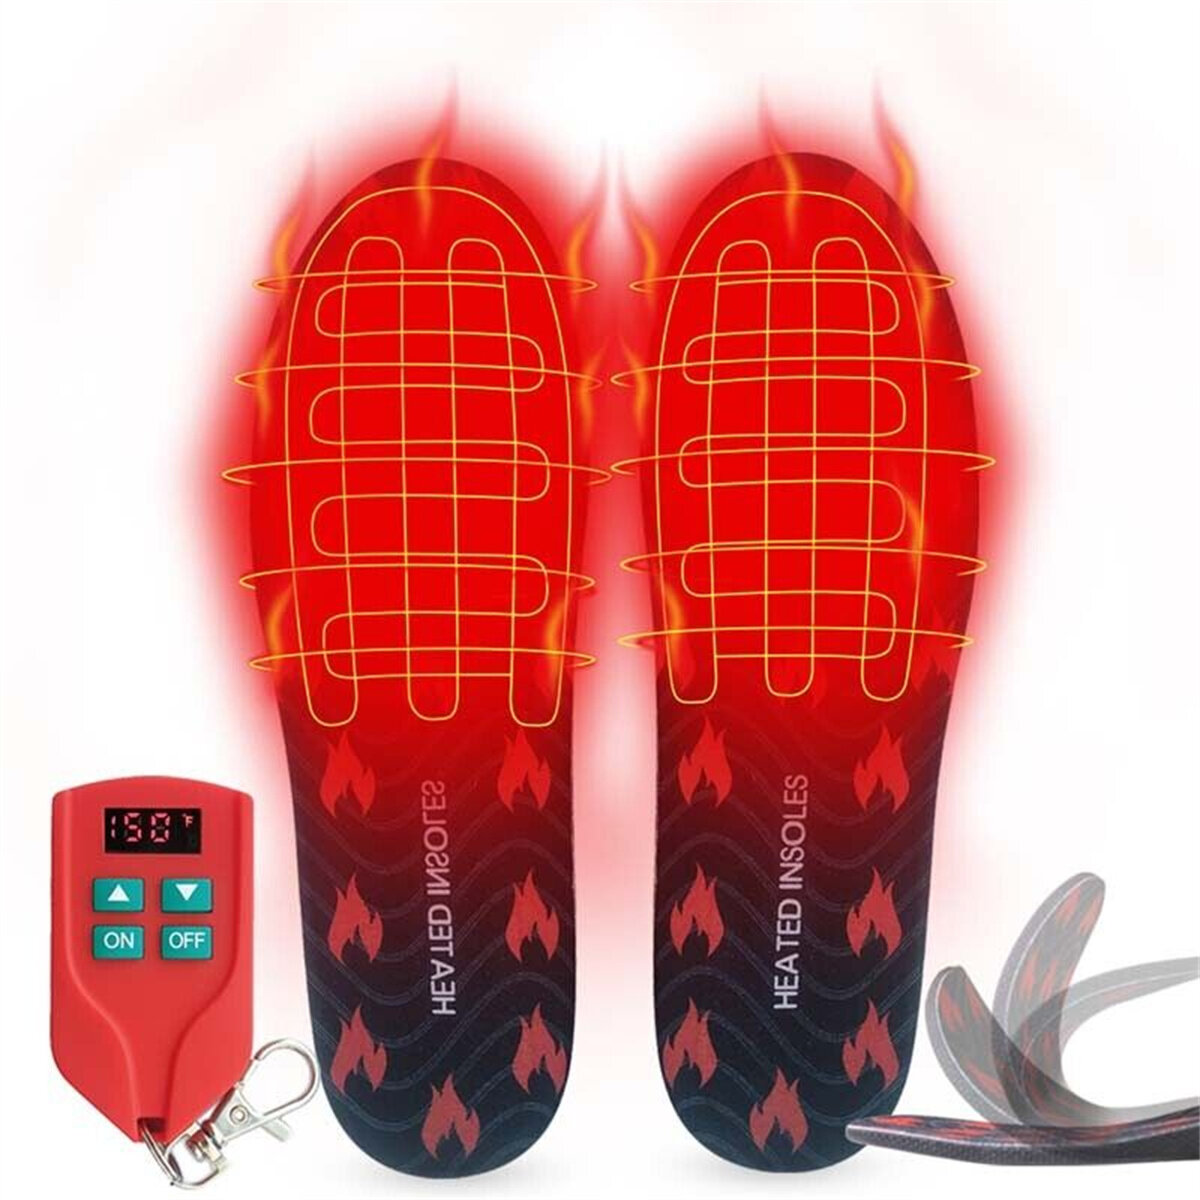 Θερμαινόμενες πάτοι των μπότων Winna με ρυθμιζόμενη θερμοκρασία, επαναφορτιζόμενοι μέσω USB, ζεσταίνουν τα πόδια το χειμώνα με ασύρματο τηλεχειριστήριο για εξωτερικούς χώρους